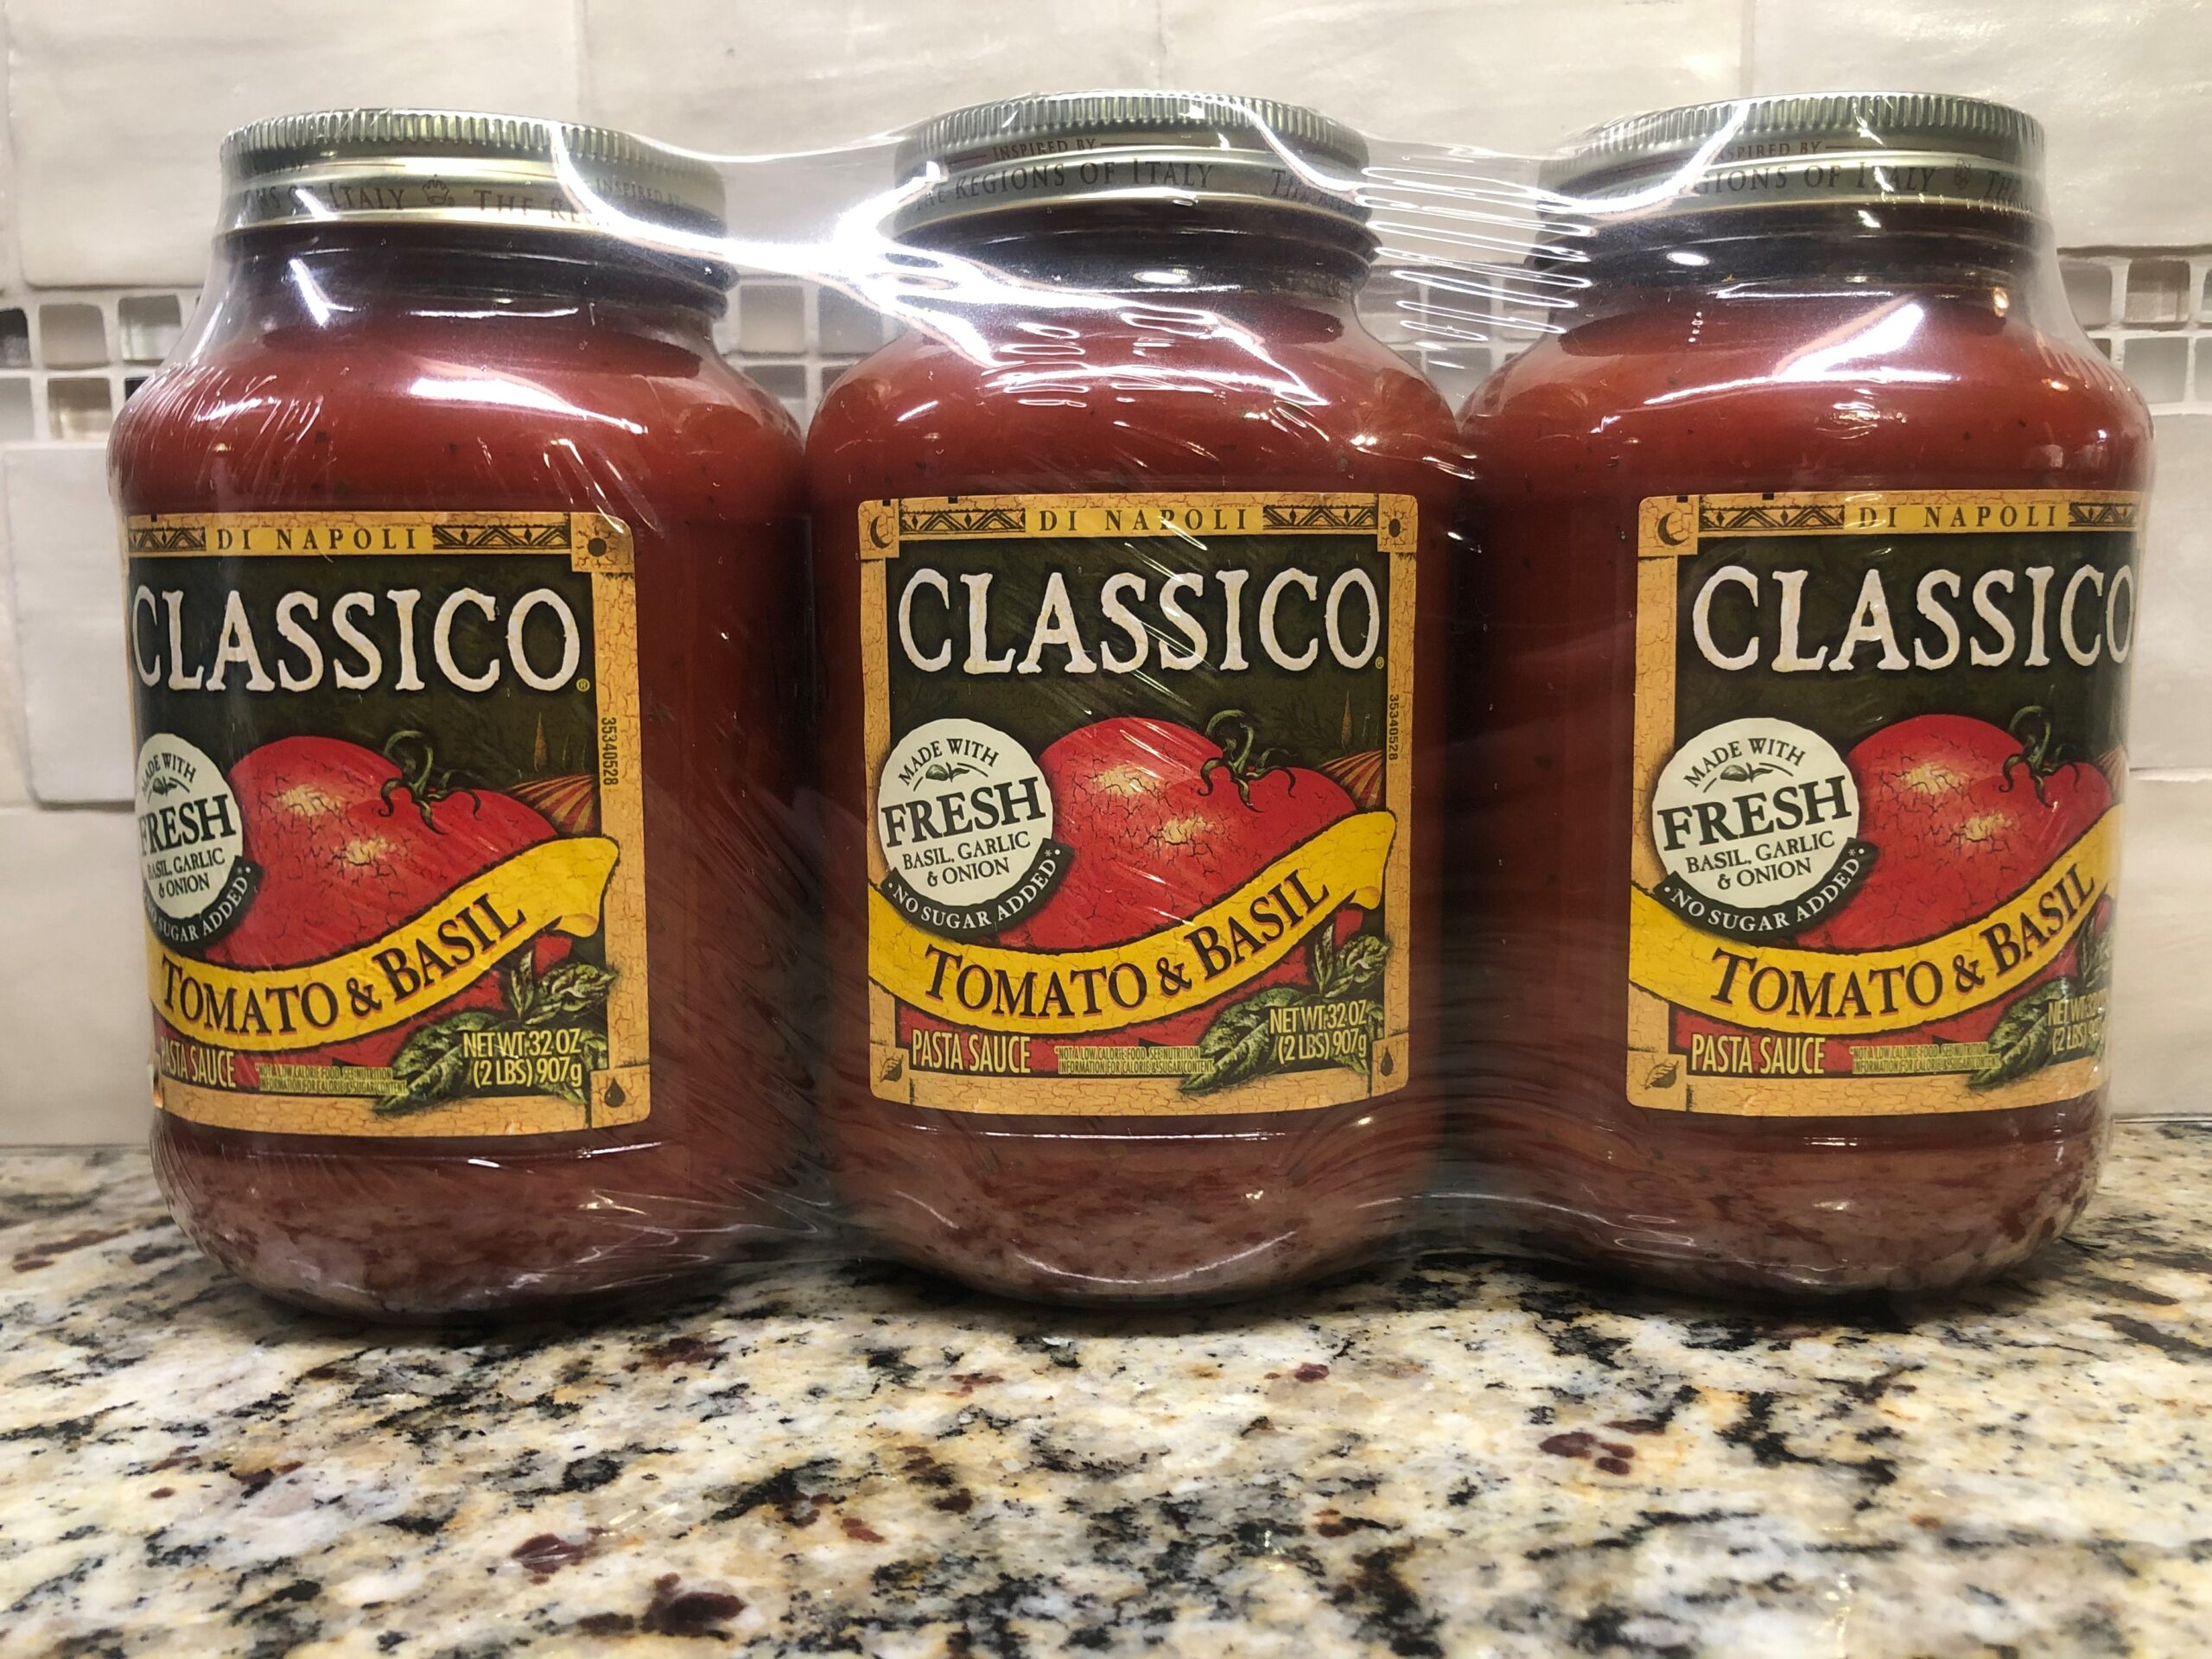 Classico Tomato & Basil Spaghetti Pasta Sauce Classico di Napoli